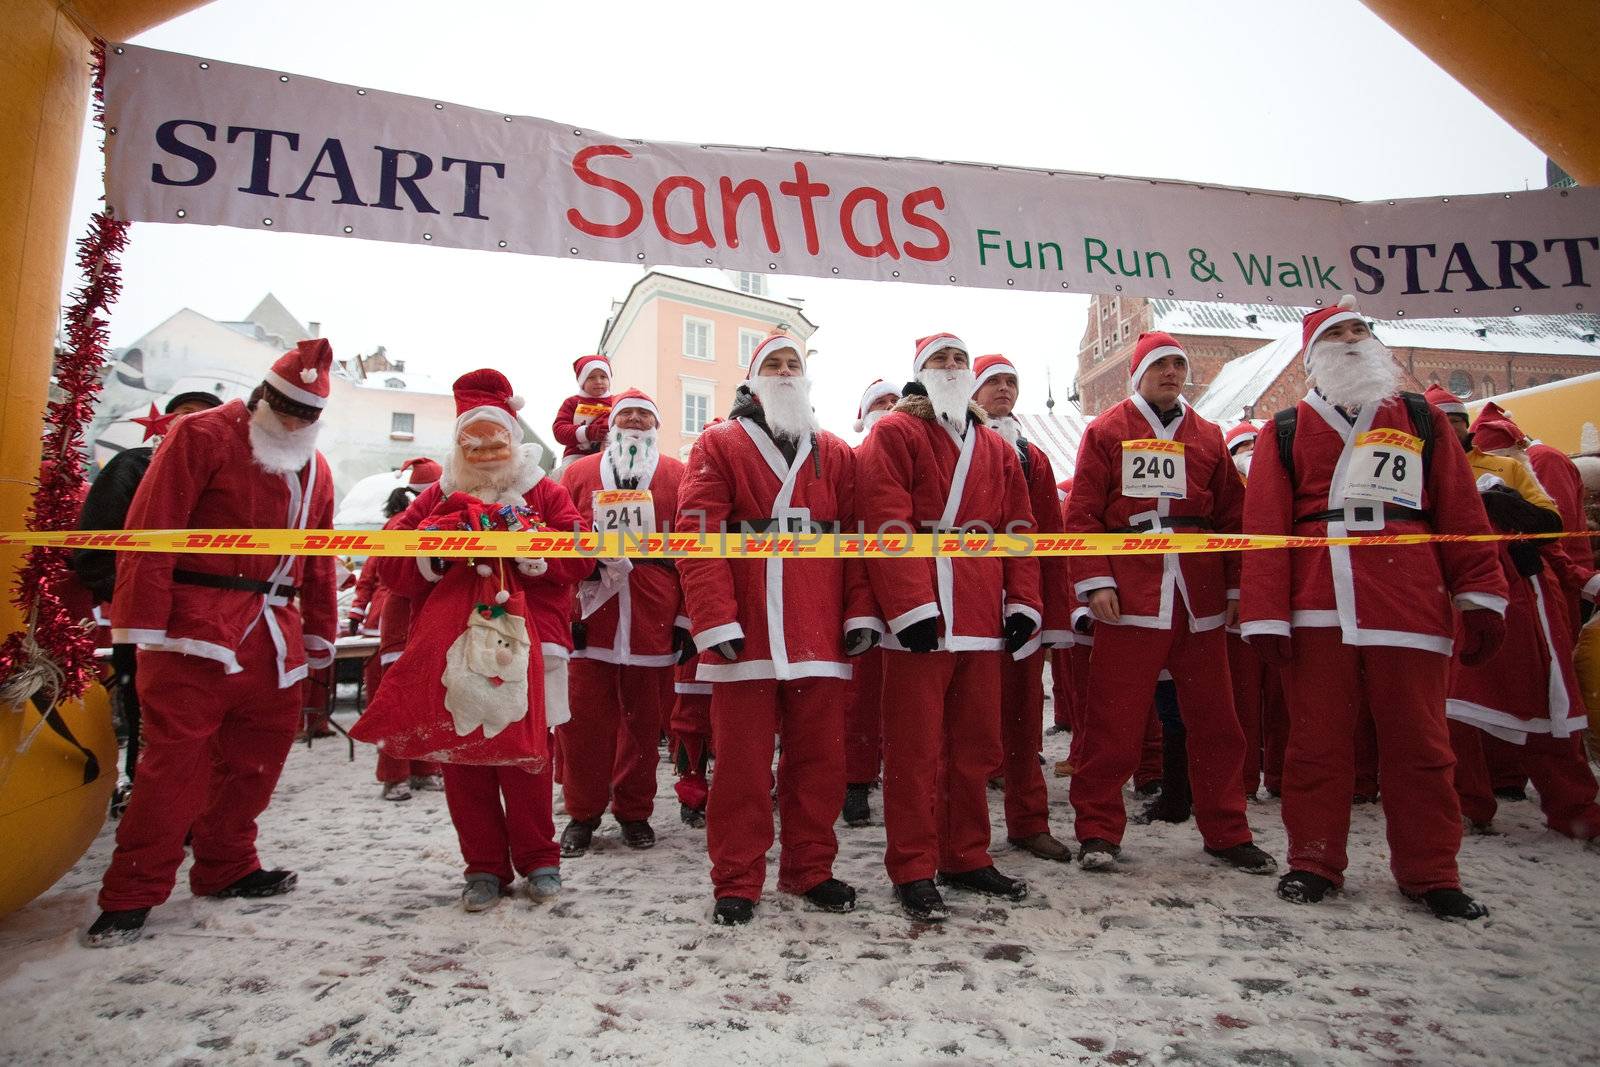 Santas Fun Run & Walk in Riga, Latvia by ints